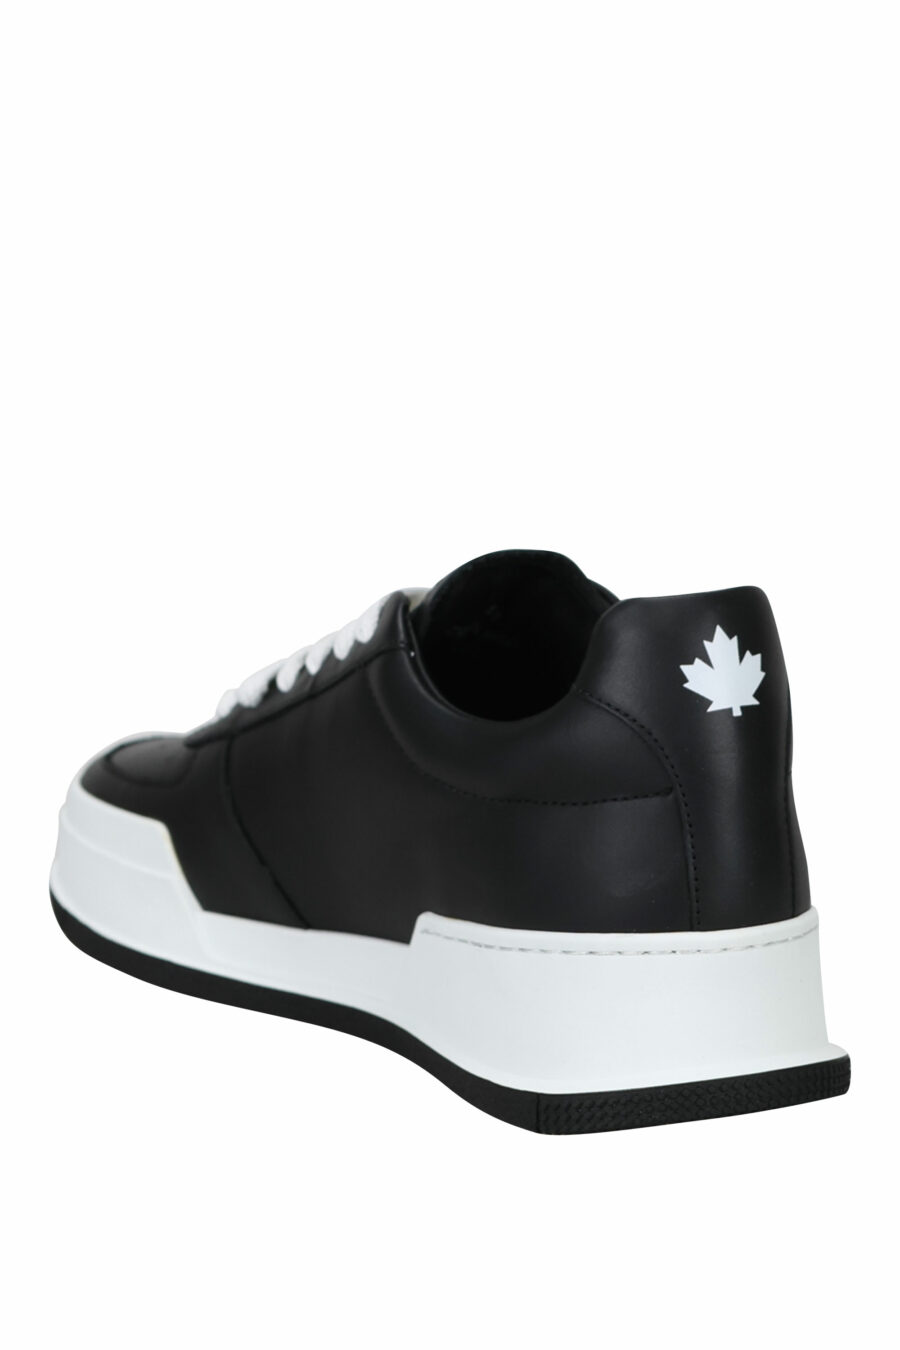 Zapatillas negras con logo "icon" y suela blanca - 8055777248911 3